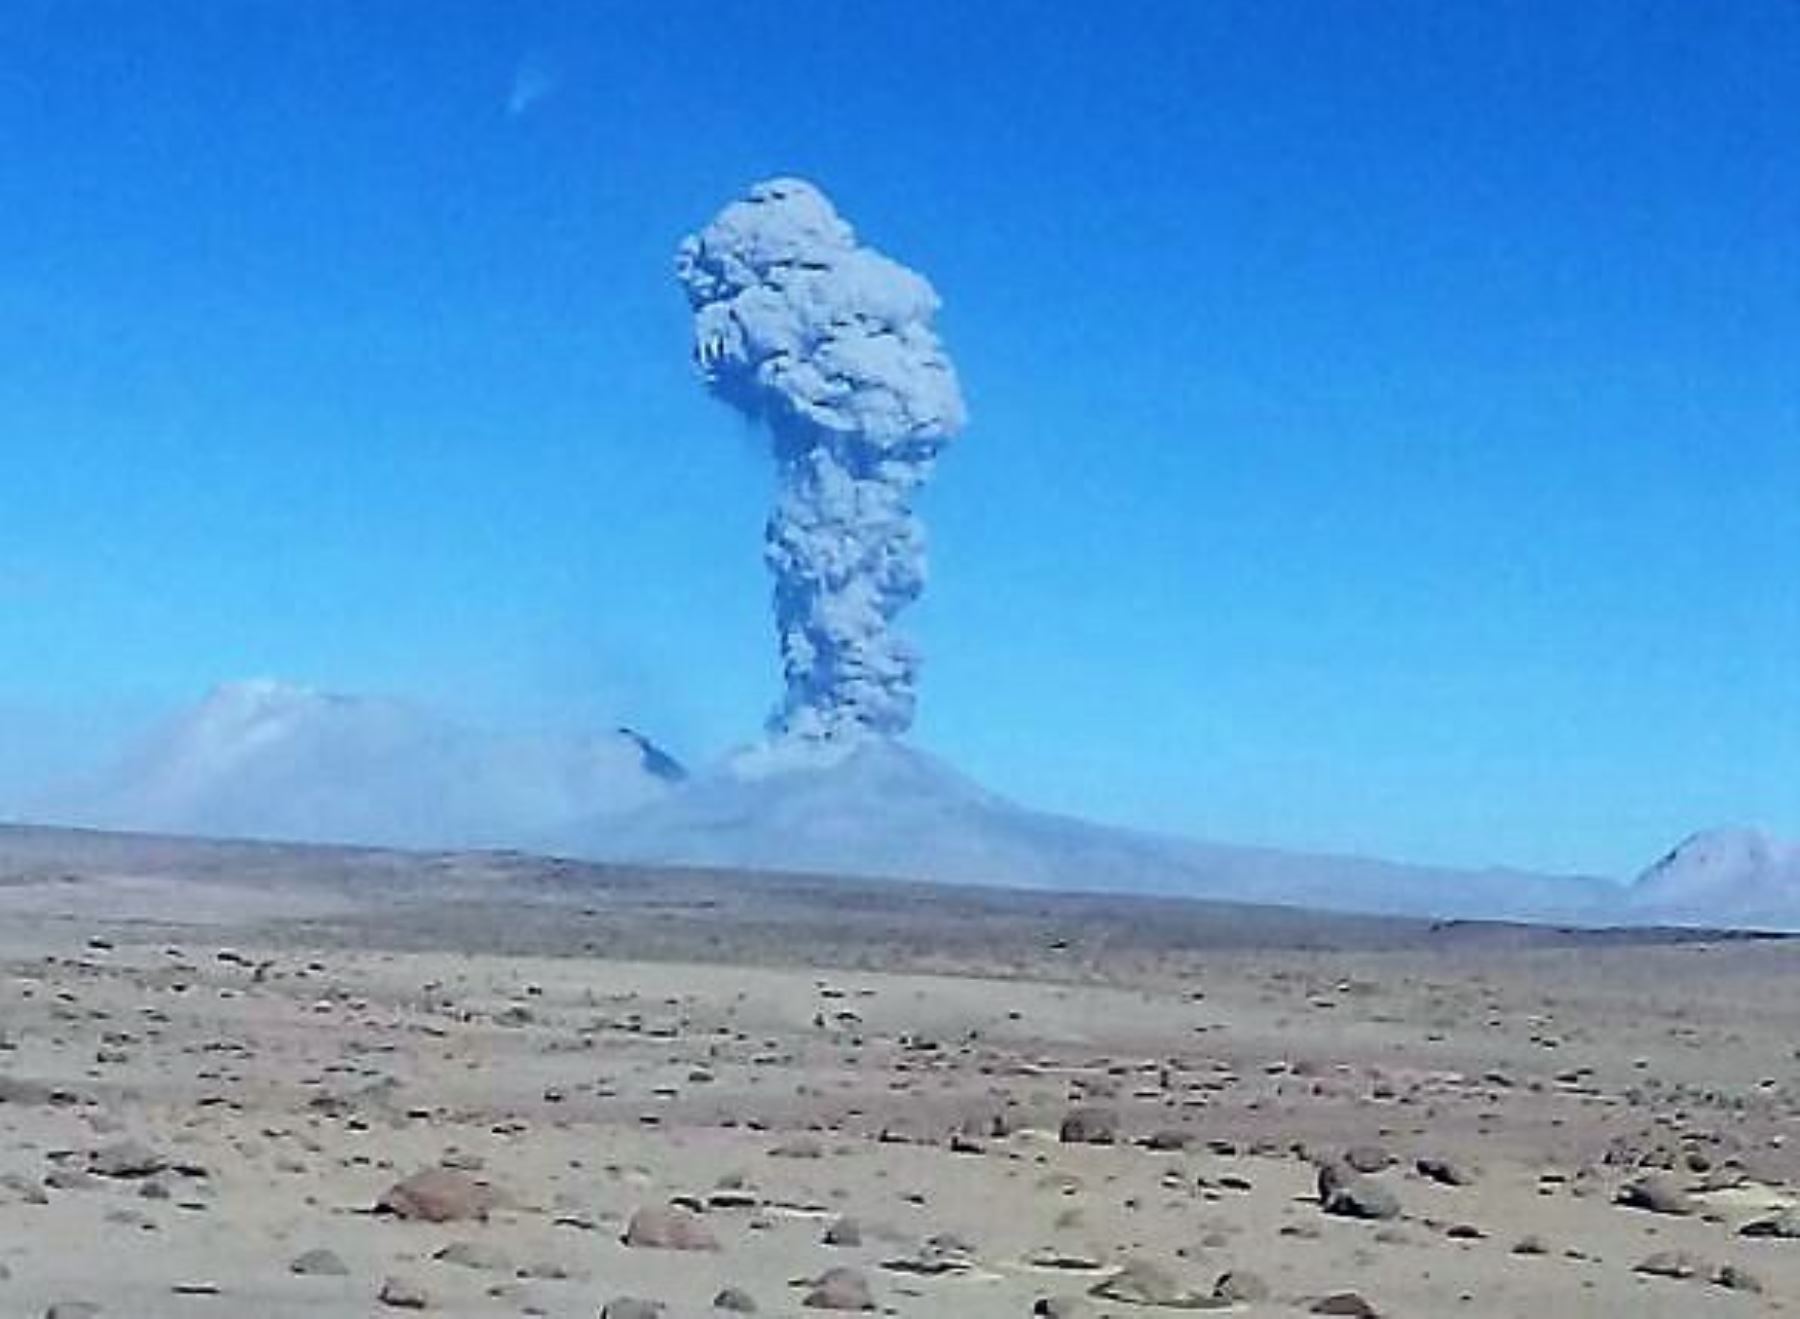 Volcán Sabancaya, ubicado en Arequipa, registró hoy una nueva explosión. Las cenizas expulsadas llegan a diversos poblados. Foto: Cortesía/Eduardo Concha Calle